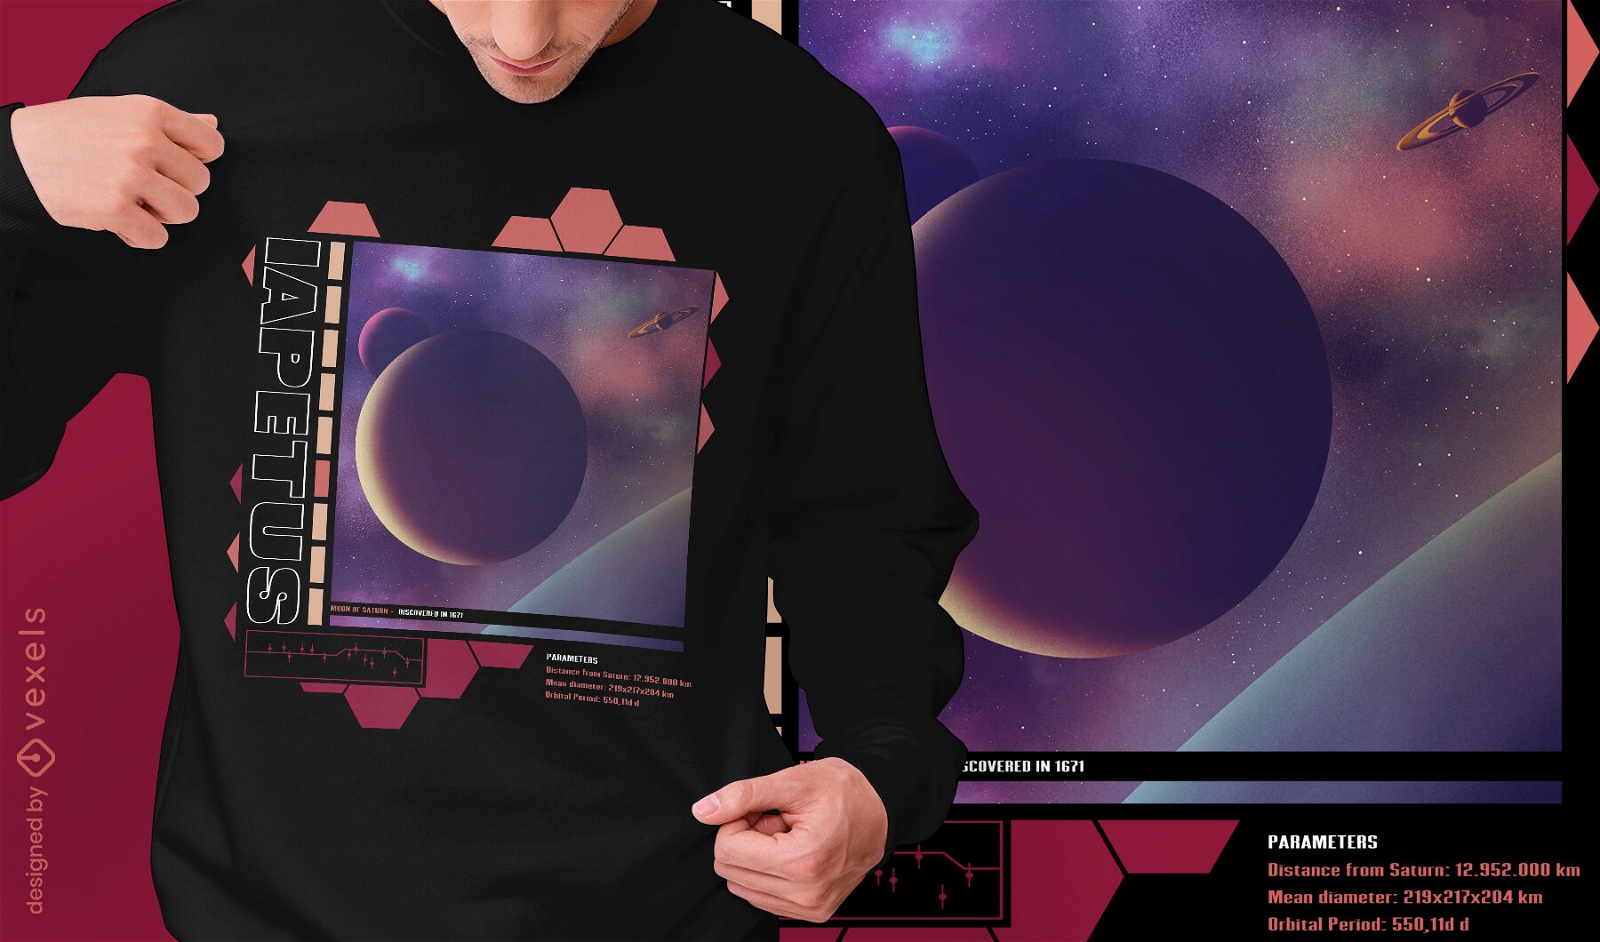 Iapetus moon of Saturn t-shirt design psd